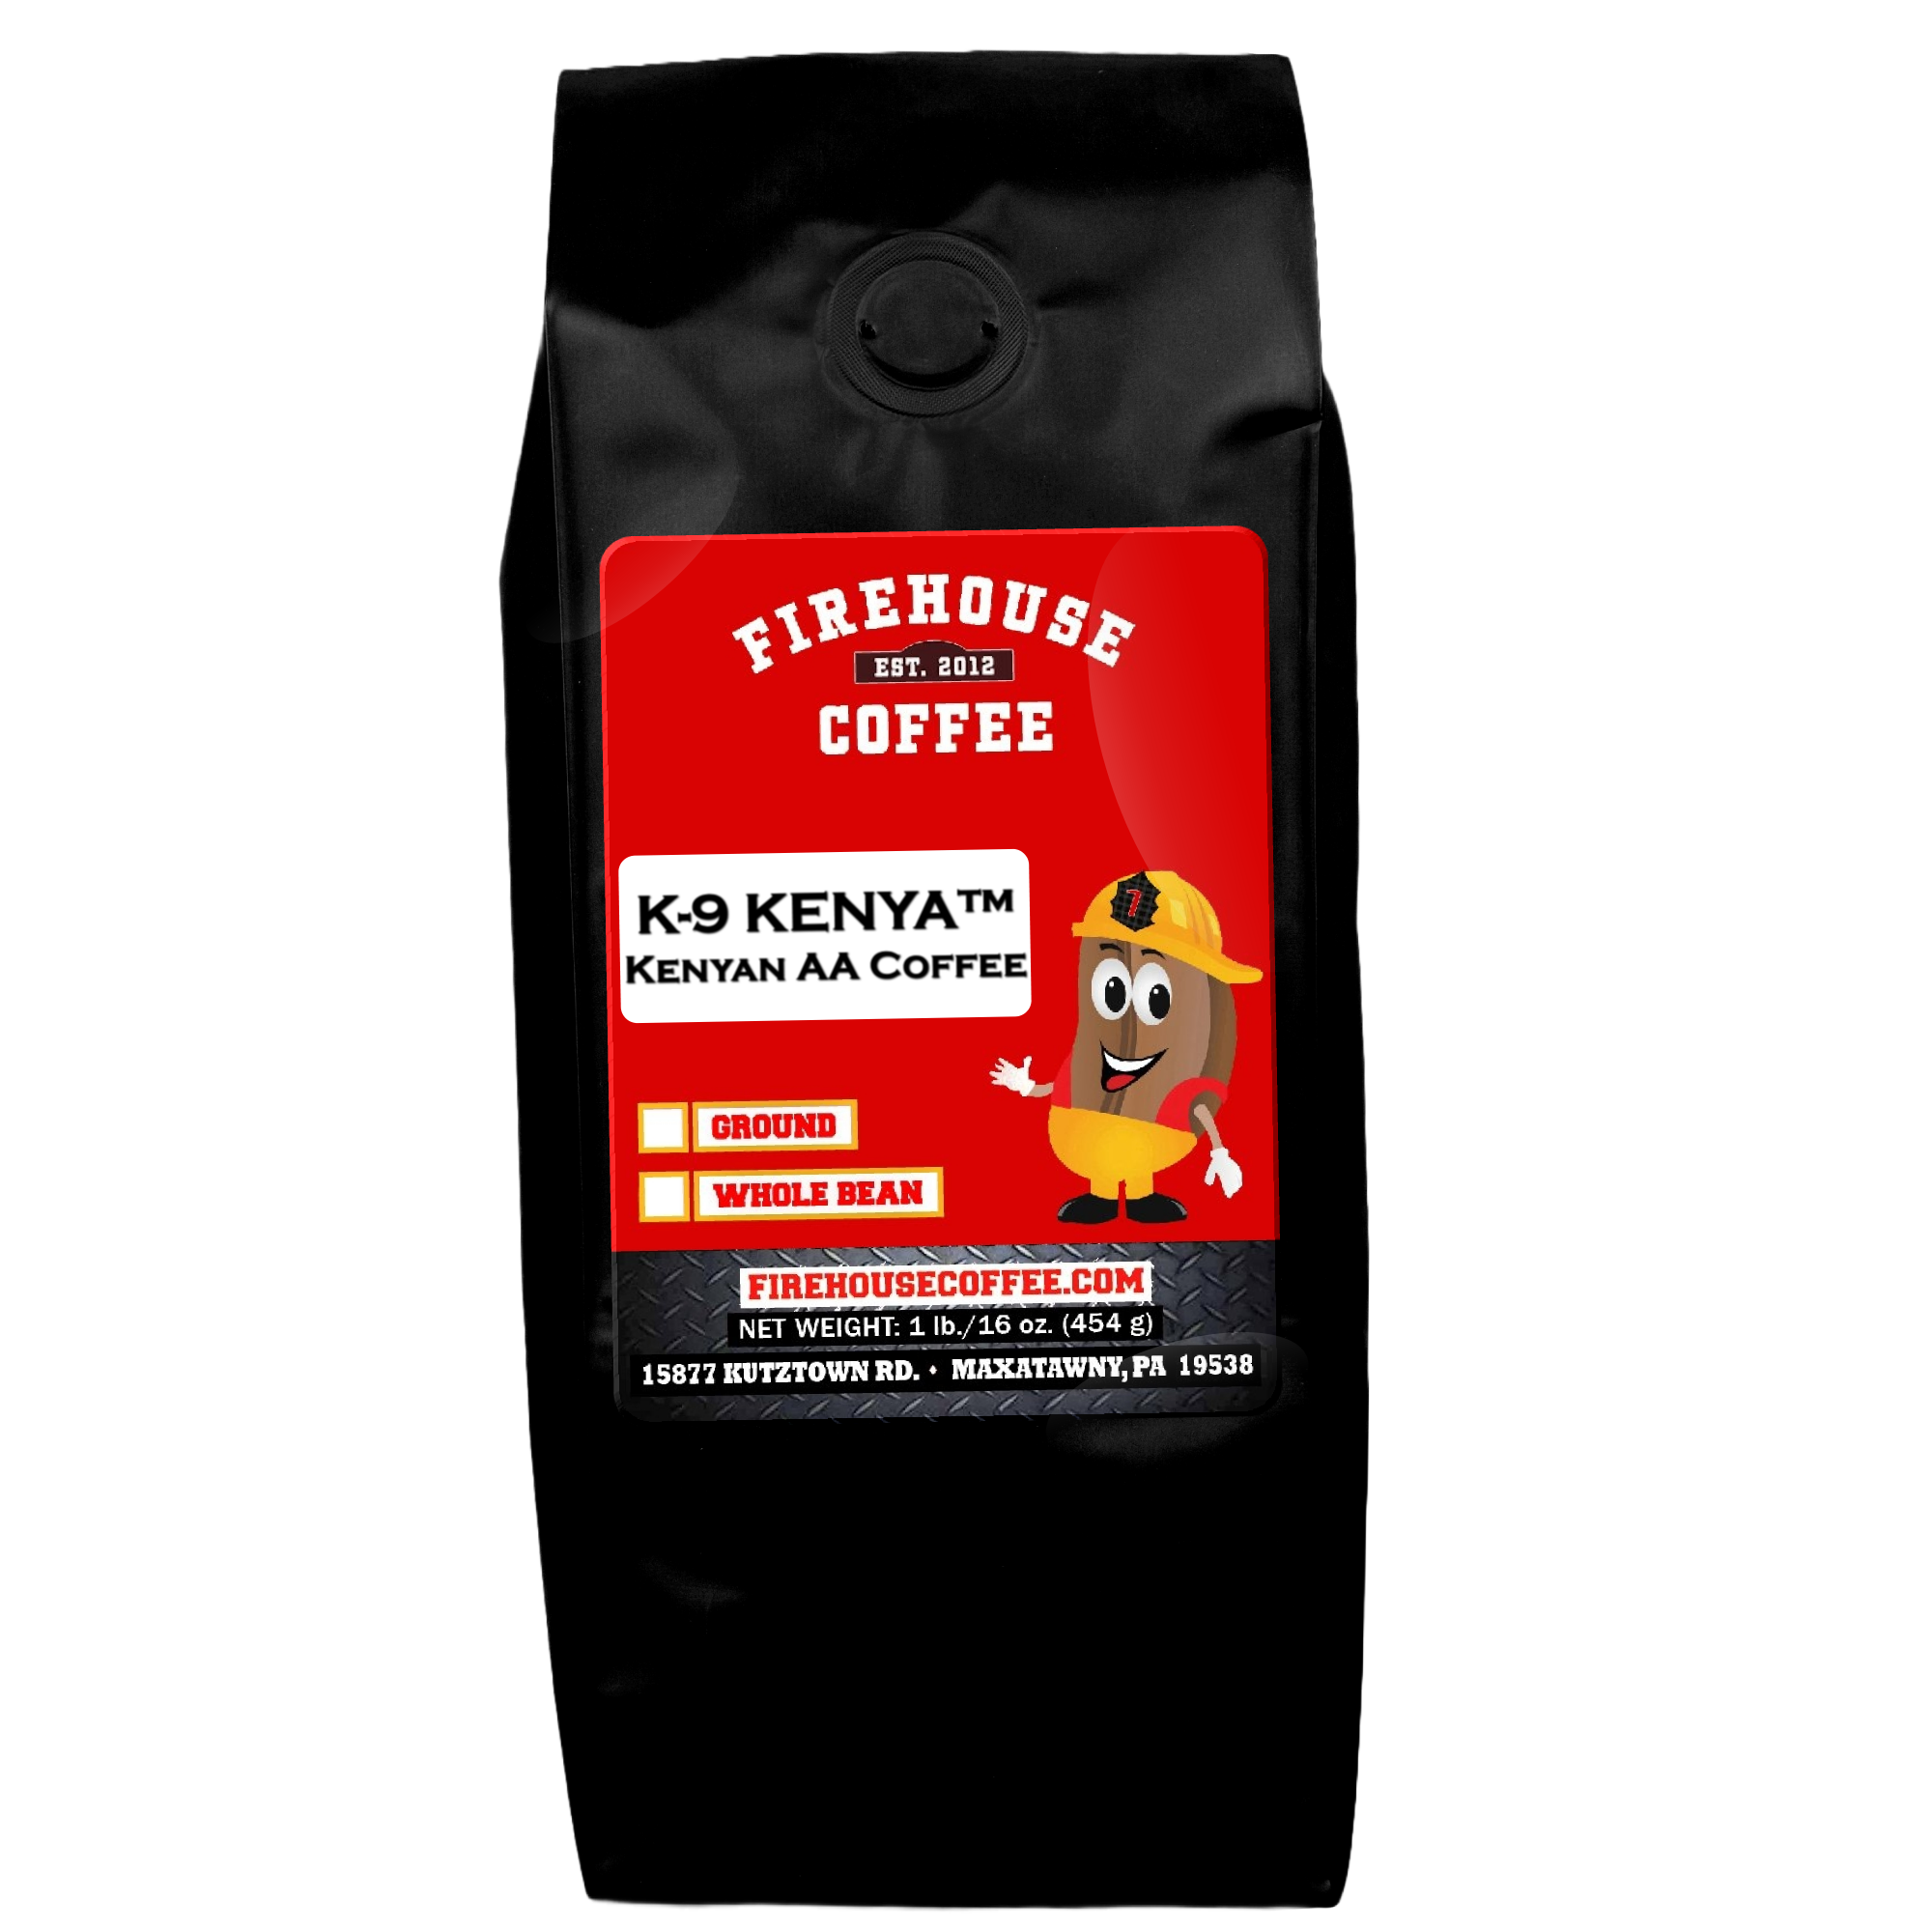 16 oz bag of Kenyan AA Single Origin Coffee